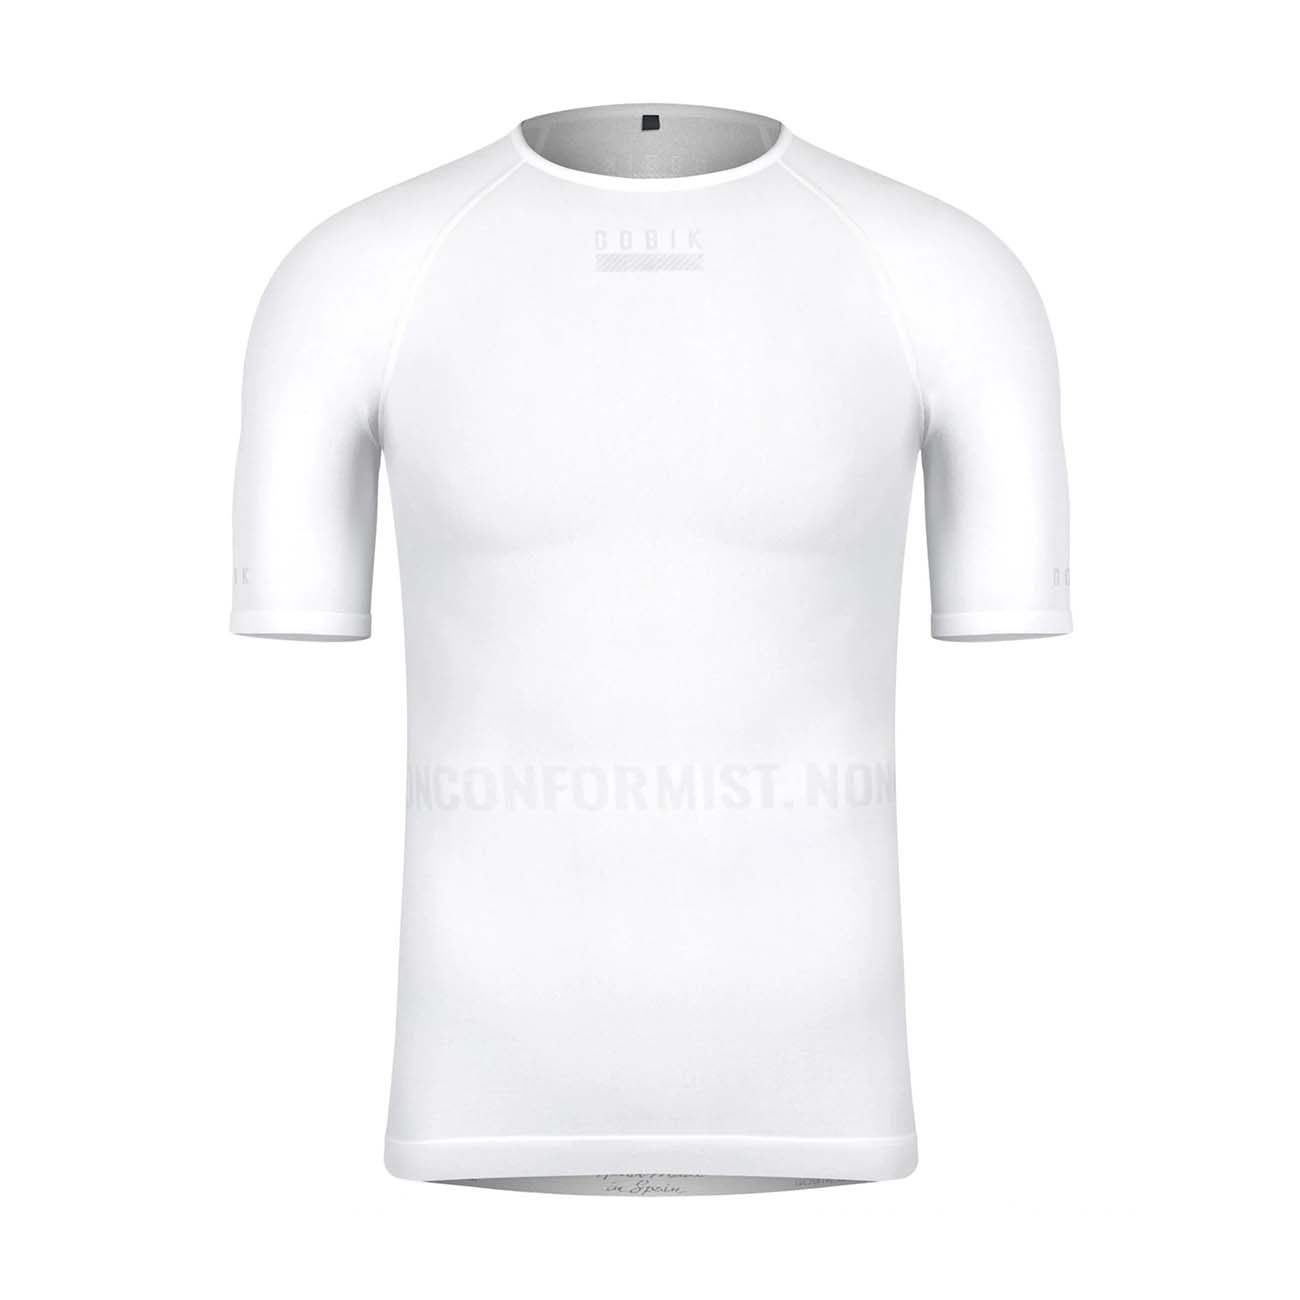 GOBIK Cyklistické triko s krátkým rukávem - LIMBER SKIN - bílá